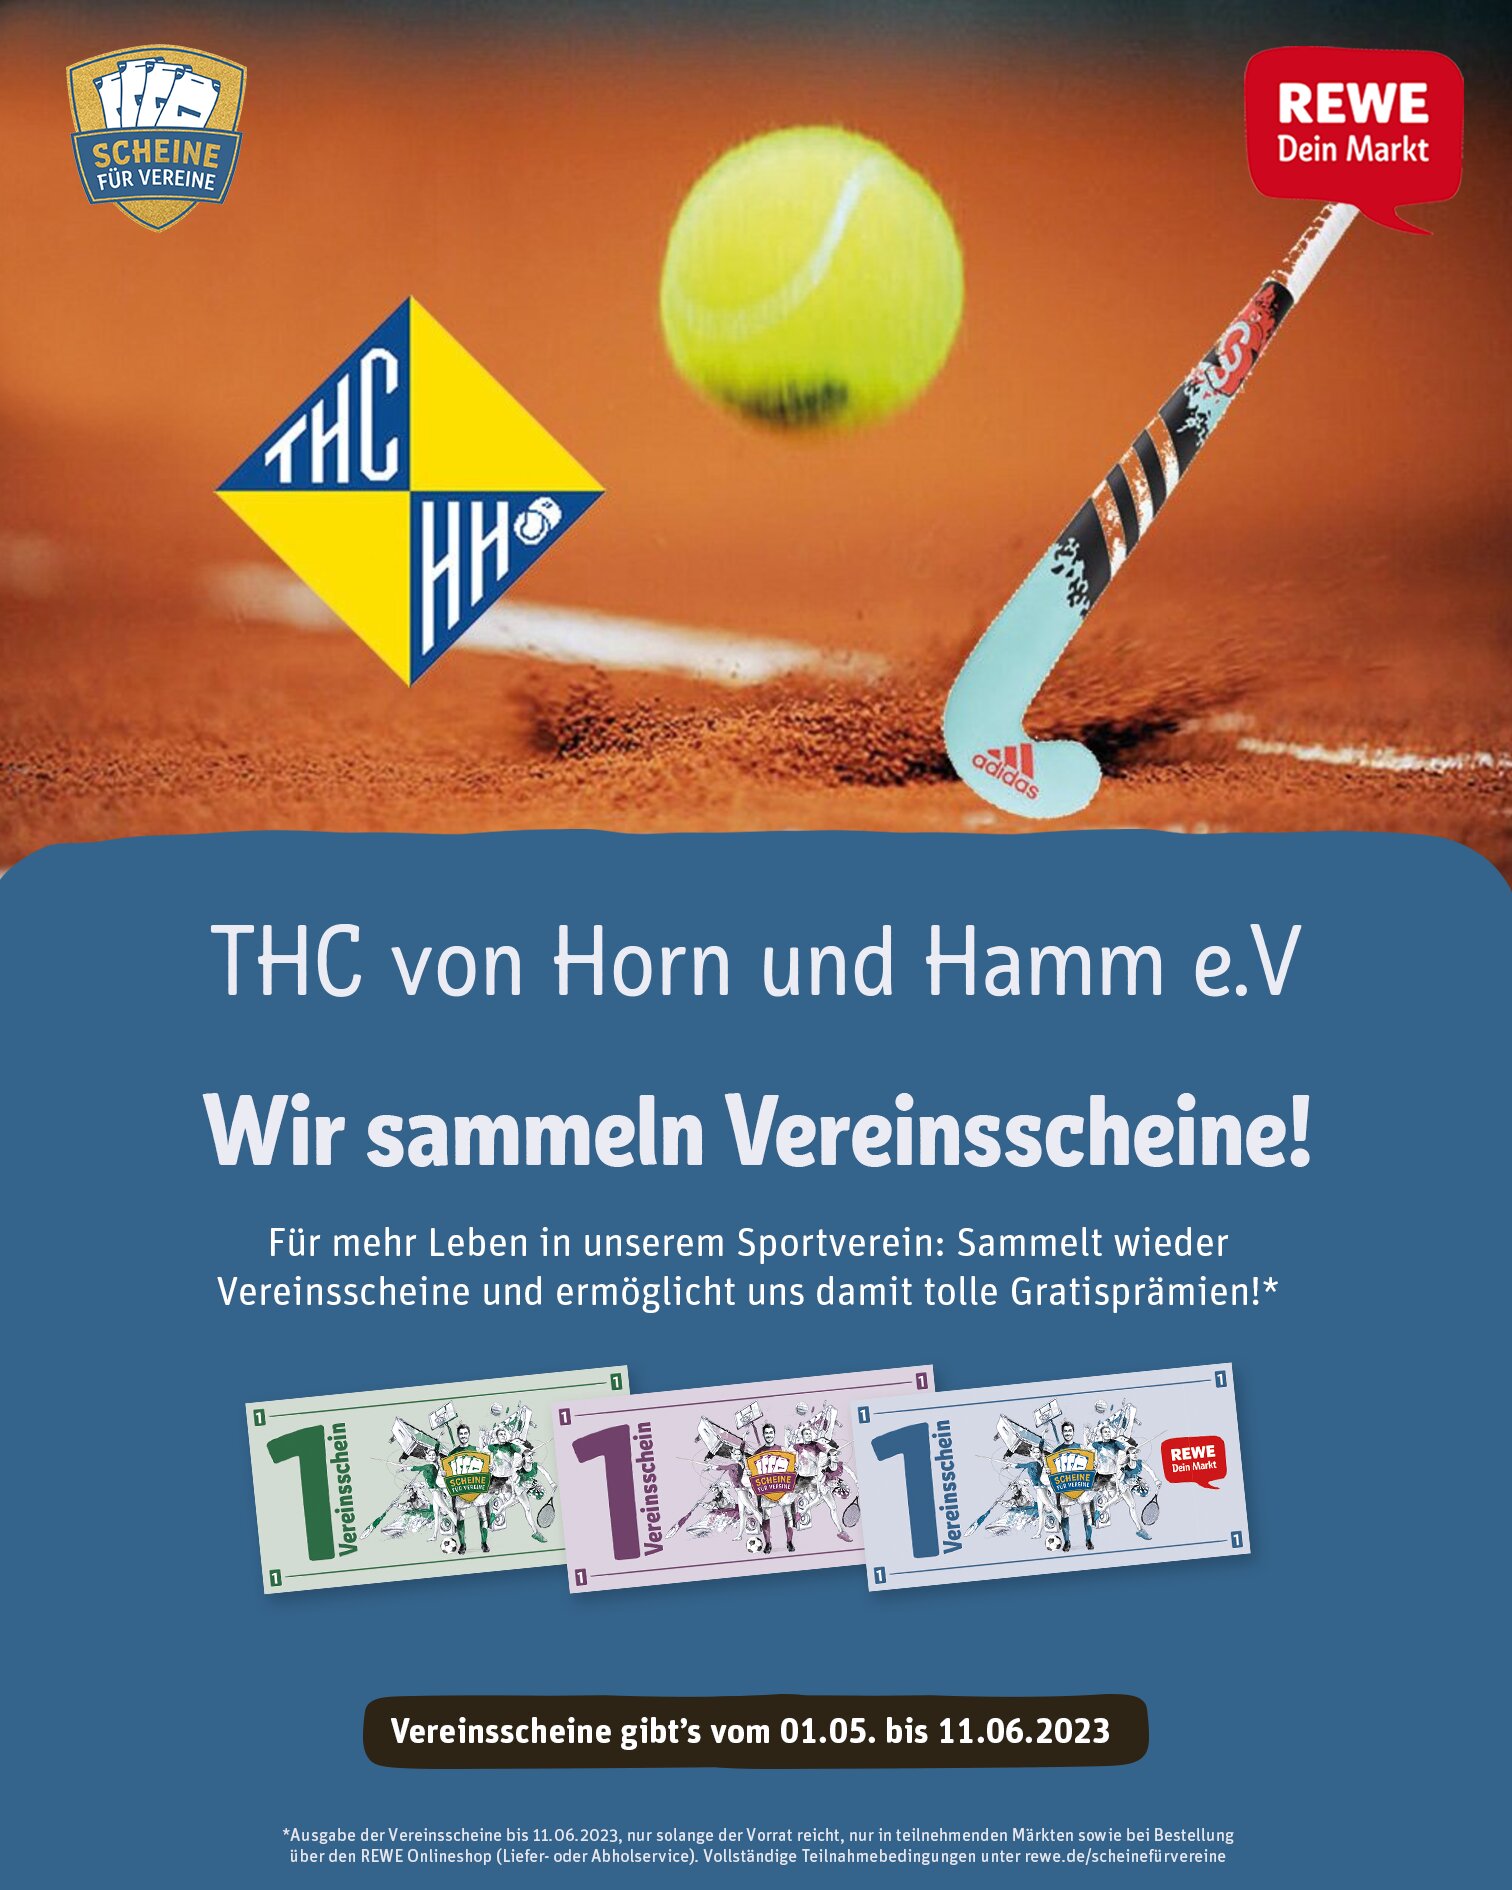 REWE Scheine fuer Vereine Poster Feed.jpg?fp=0.49000066002244 0